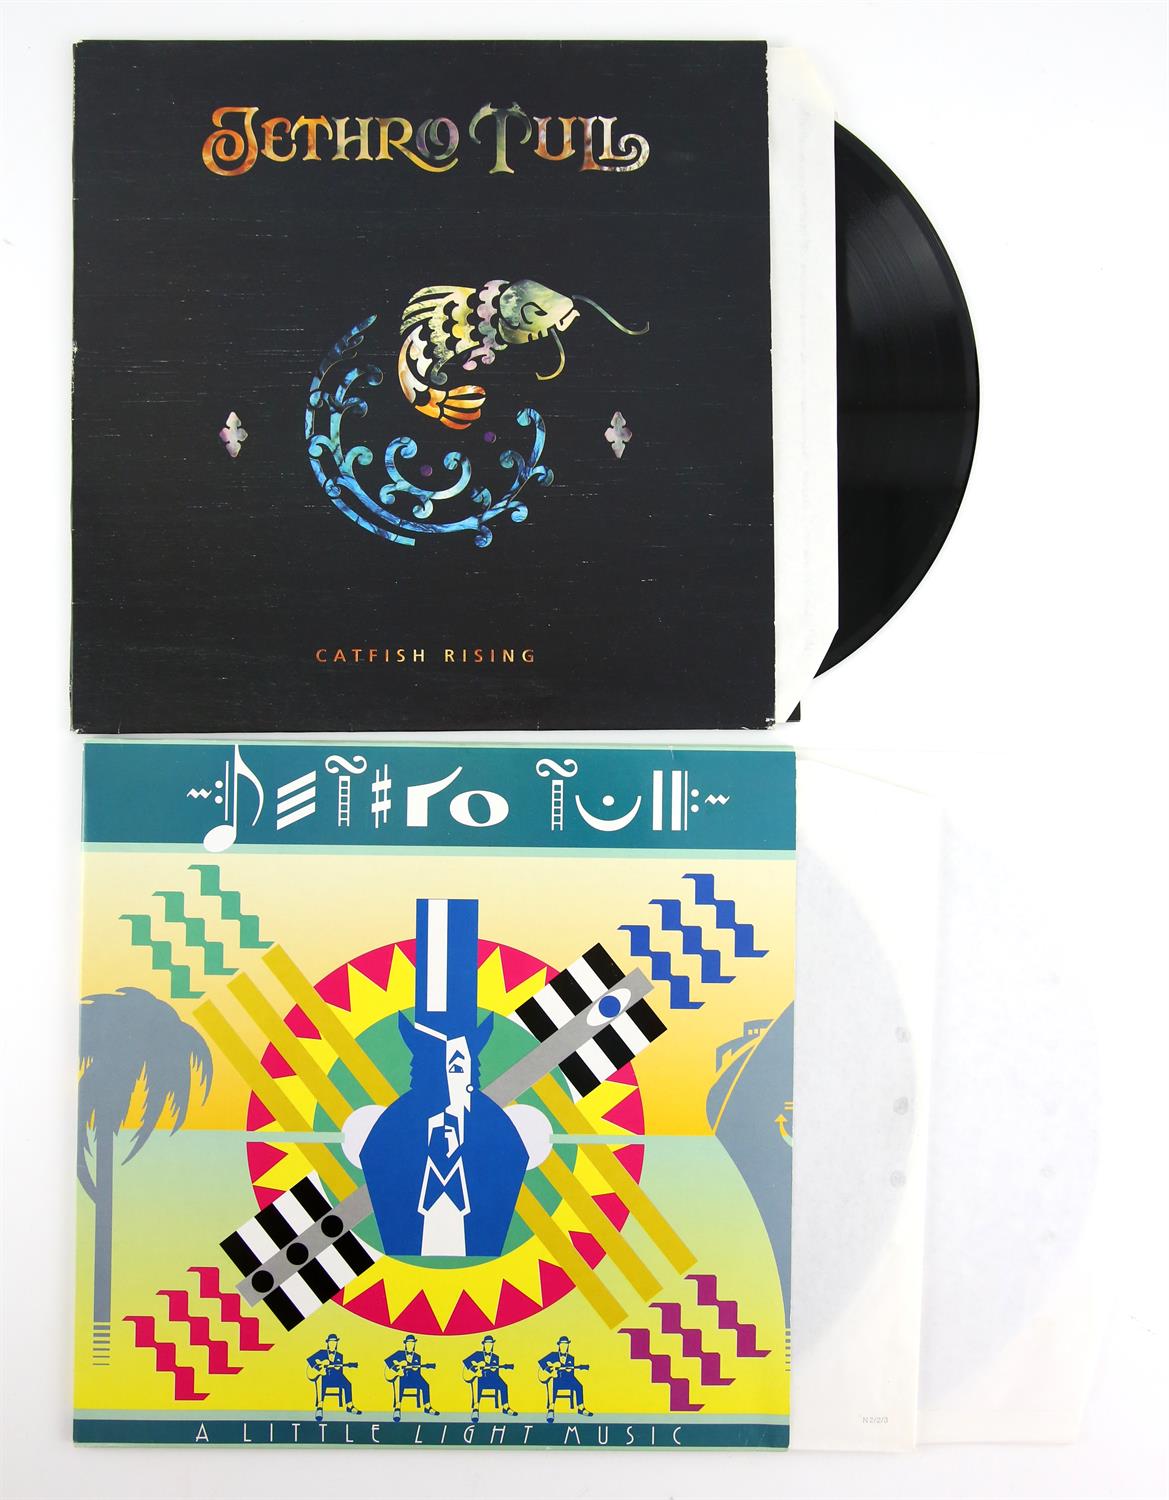 Jethro Tull “Catfish Rising” 1991 UK LP + bonus 12 inch along with the 1992 UK “A Little Light